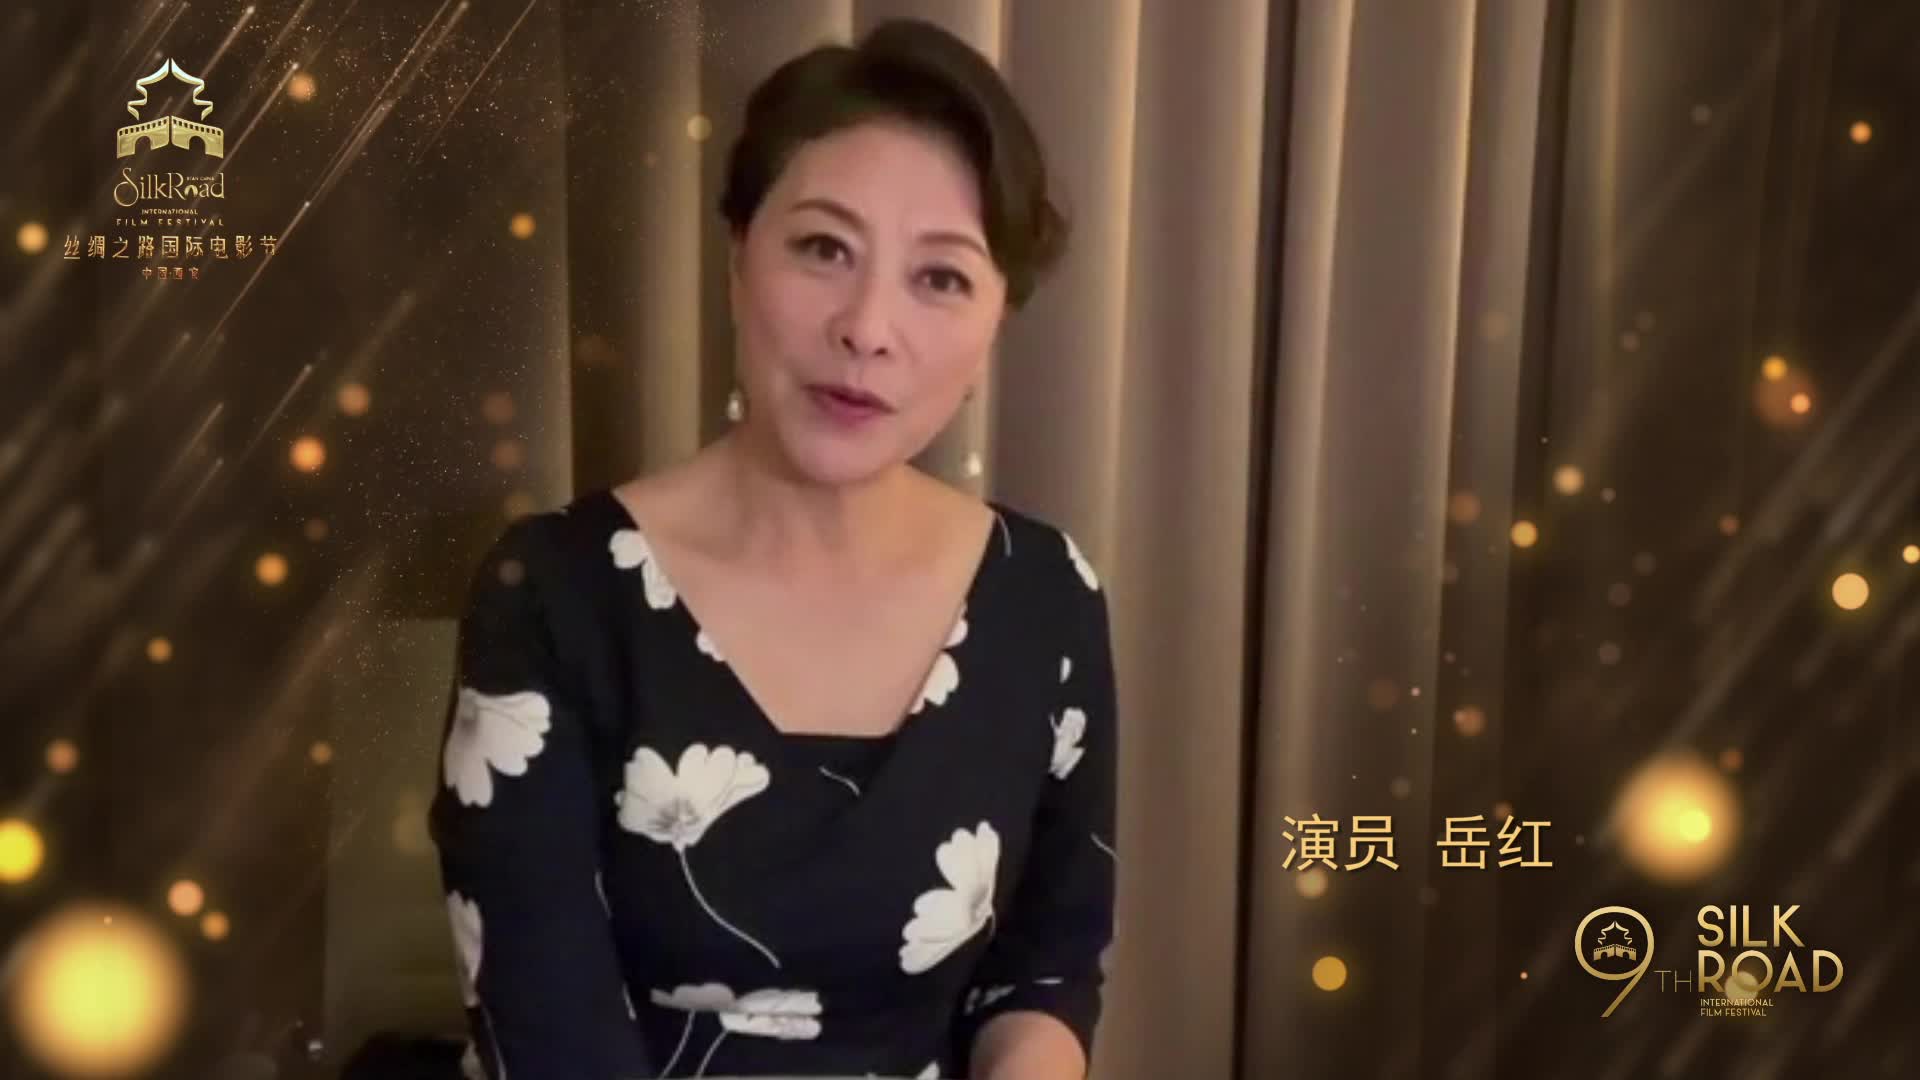 第九届丝绸之路国际电影节明星影人祝福集锦